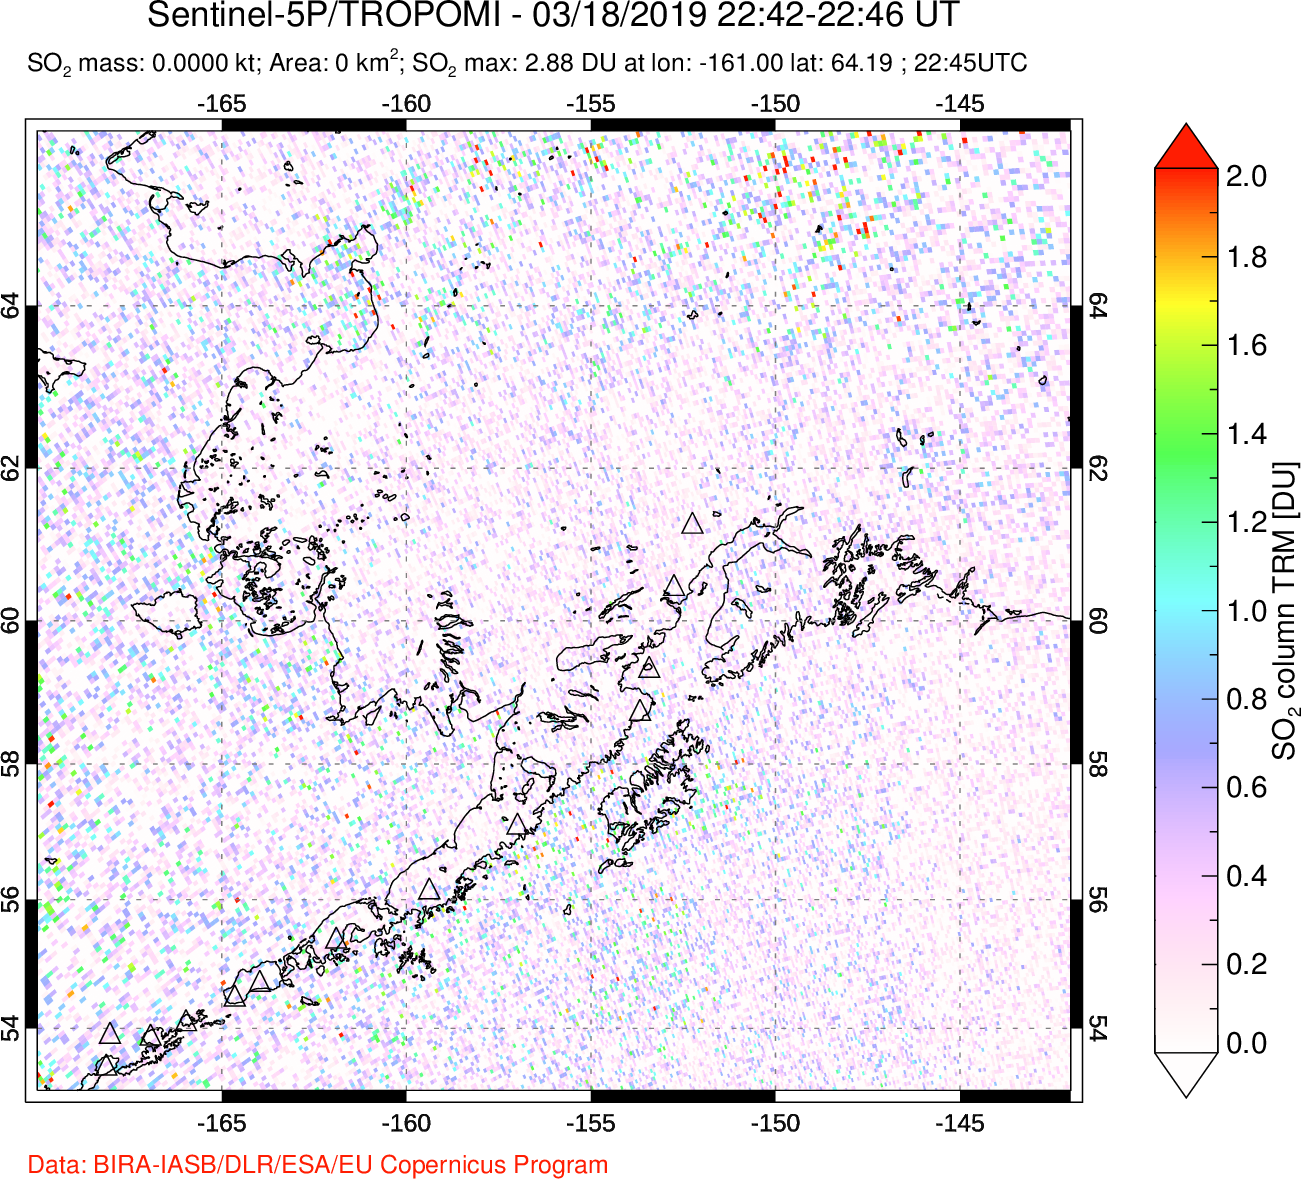 A sulfur dioxide image over Alaska, USA on Mar 18, 2019.